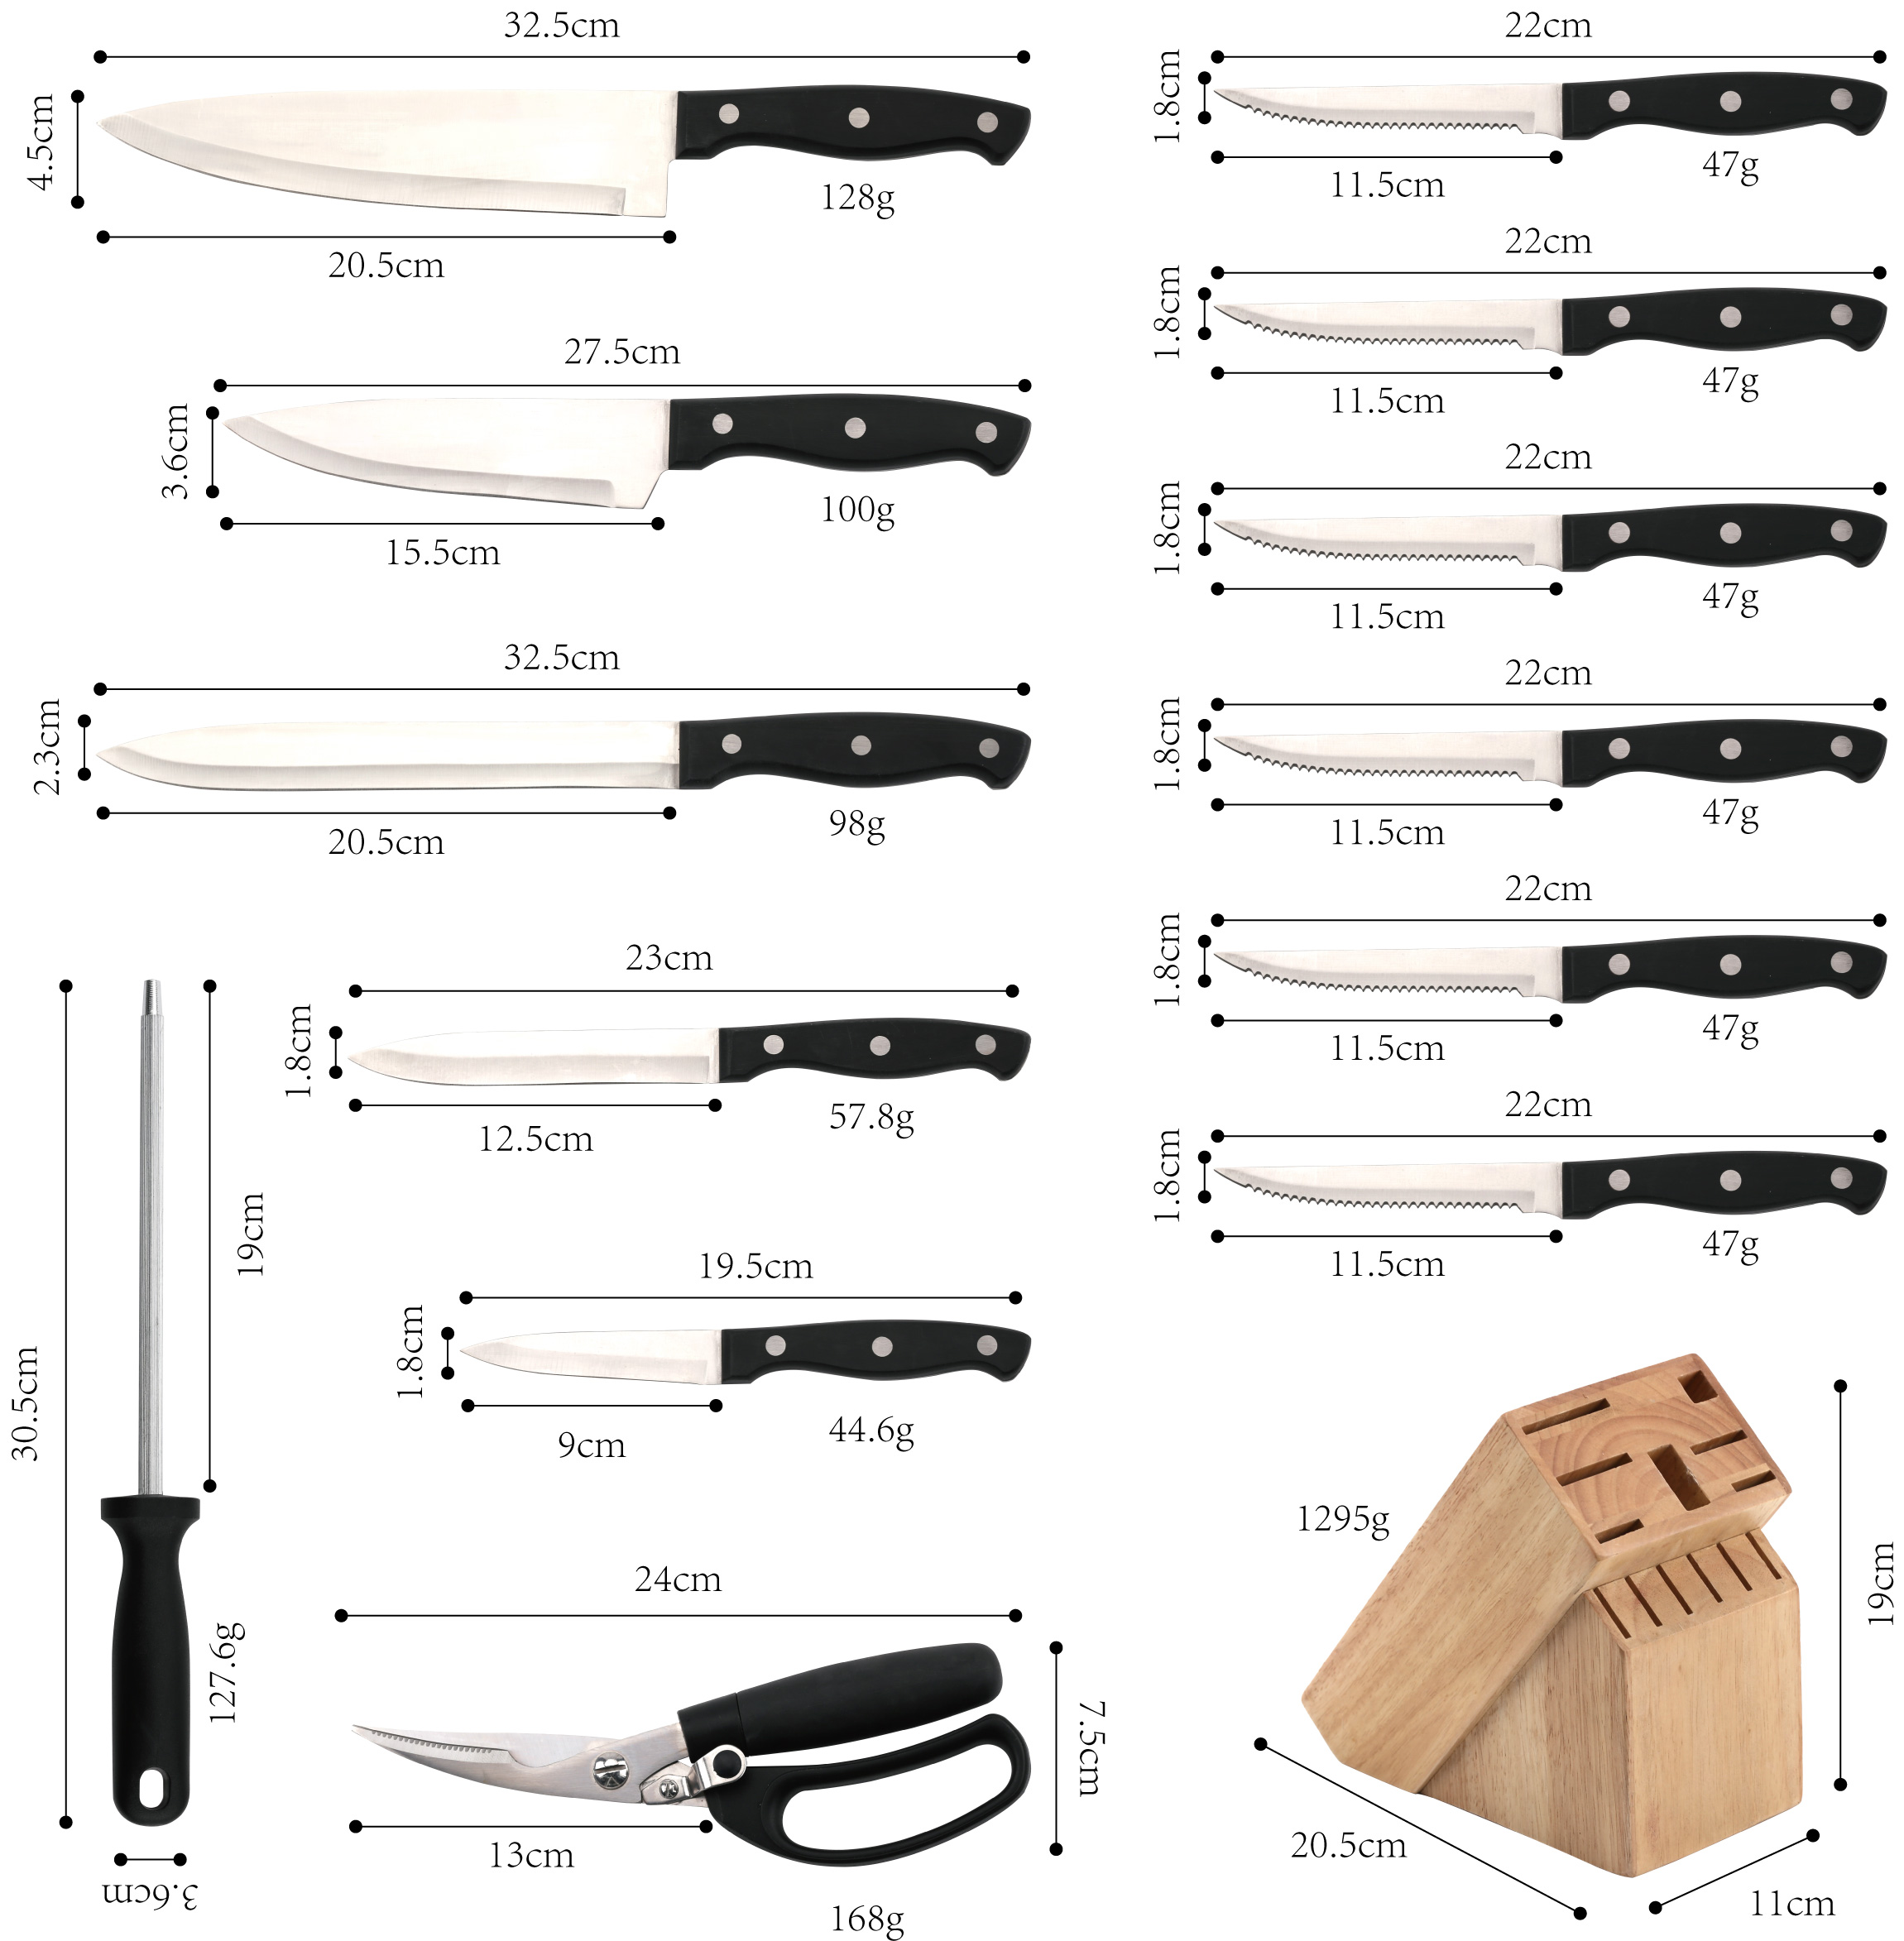 J104-14-Piece Набор блоков для кухонных ножей премиум-класса, высокоуглеродистая нержавеющая сталь-ZX | кухонный нож, кухонные инструменты, силиконовая форма для торта, разделочная доска, наборы инструментов для выпечки, нож шеф-повара, нож для стейка, нож для нарезки, универсальный нож, нож для очистки овощей, блок ножей, подставка для ножей, нож Сантоку, нож для малышей, пластиковый нож, антипригарная окраска Нож, красочный нож, нож из нержавеющей стали, консервный нож, открывалка для бутылок, ситечко для чая, терка, взбиватель яиц, нейлоновый кухонный инструмент, силиконовый кухонный инструмент, резак для печенья, набор кухонных ножей, точилка для ножей, овощечистка, нож для торта, нож для сыра, пицца Нож, силиконовый шпатель, силиконовая ложка, щипцы для еды, кованый нож, кухонные ножницы, ножи для выпечки торта, детские кухонные ножи, разделочный нож